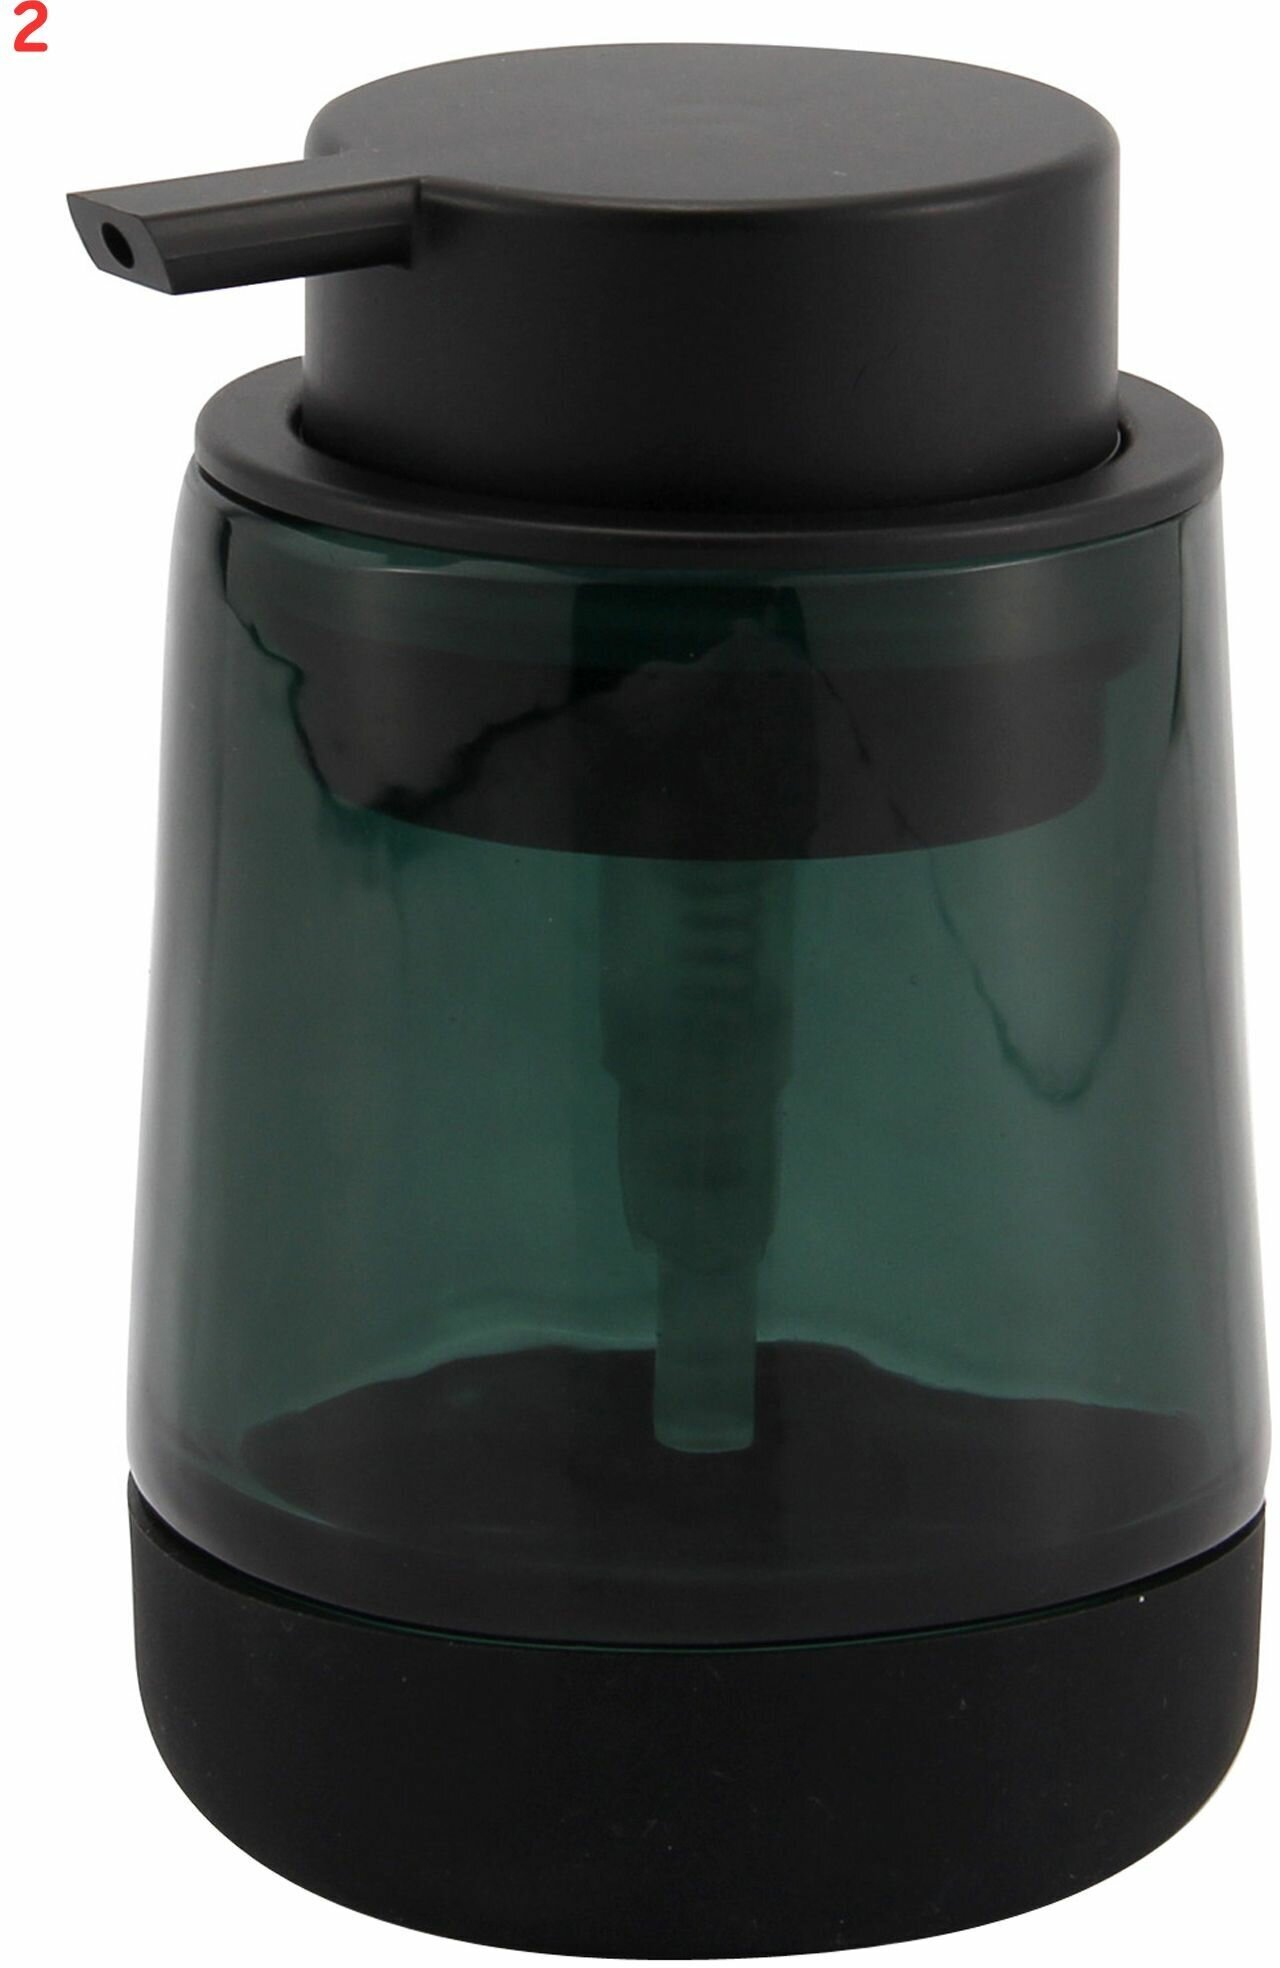 Дозатор для жидкого мыла Bonn Silicon цвет зелёный/чёрный (2 шт.)